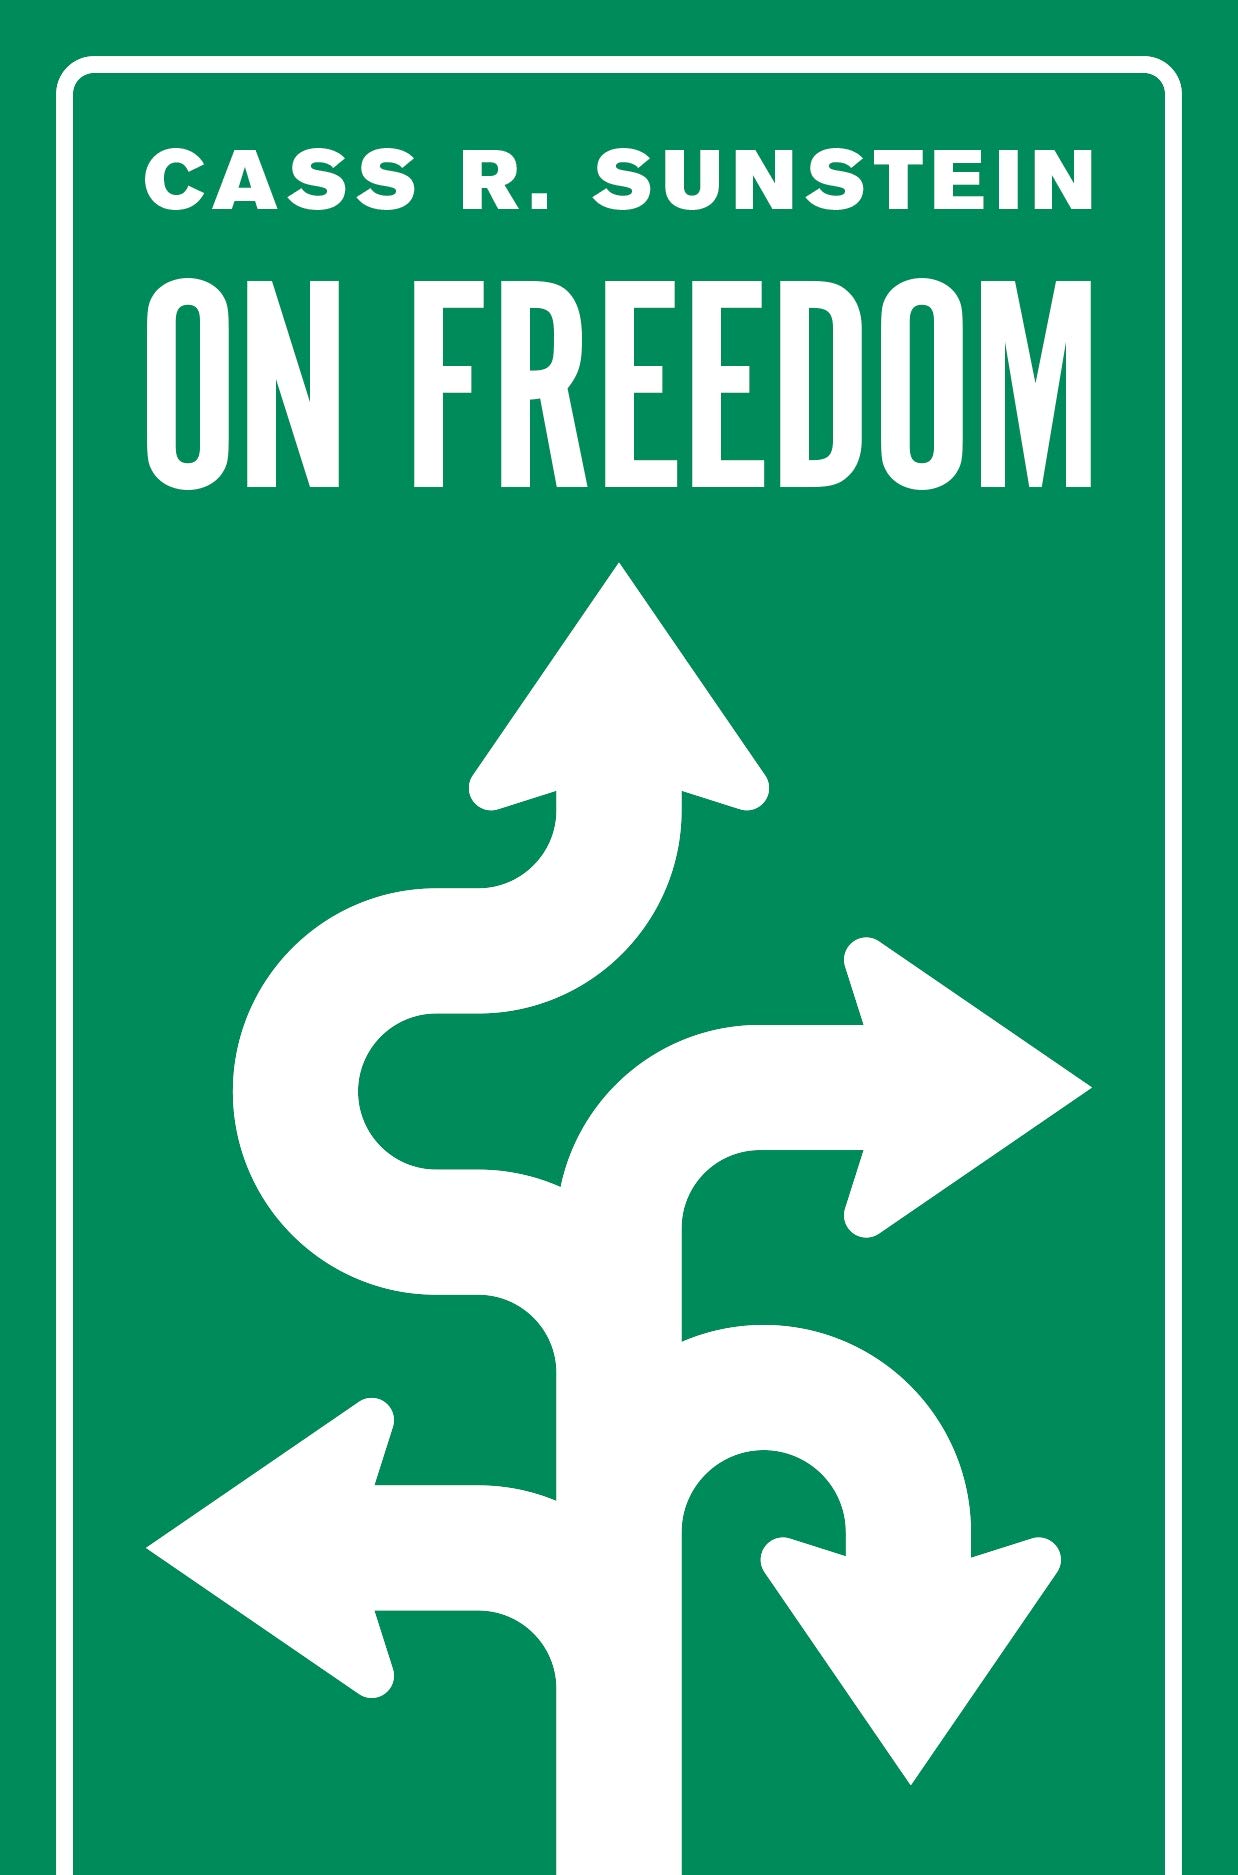 On Freedom | Cass R. Sunstein image7